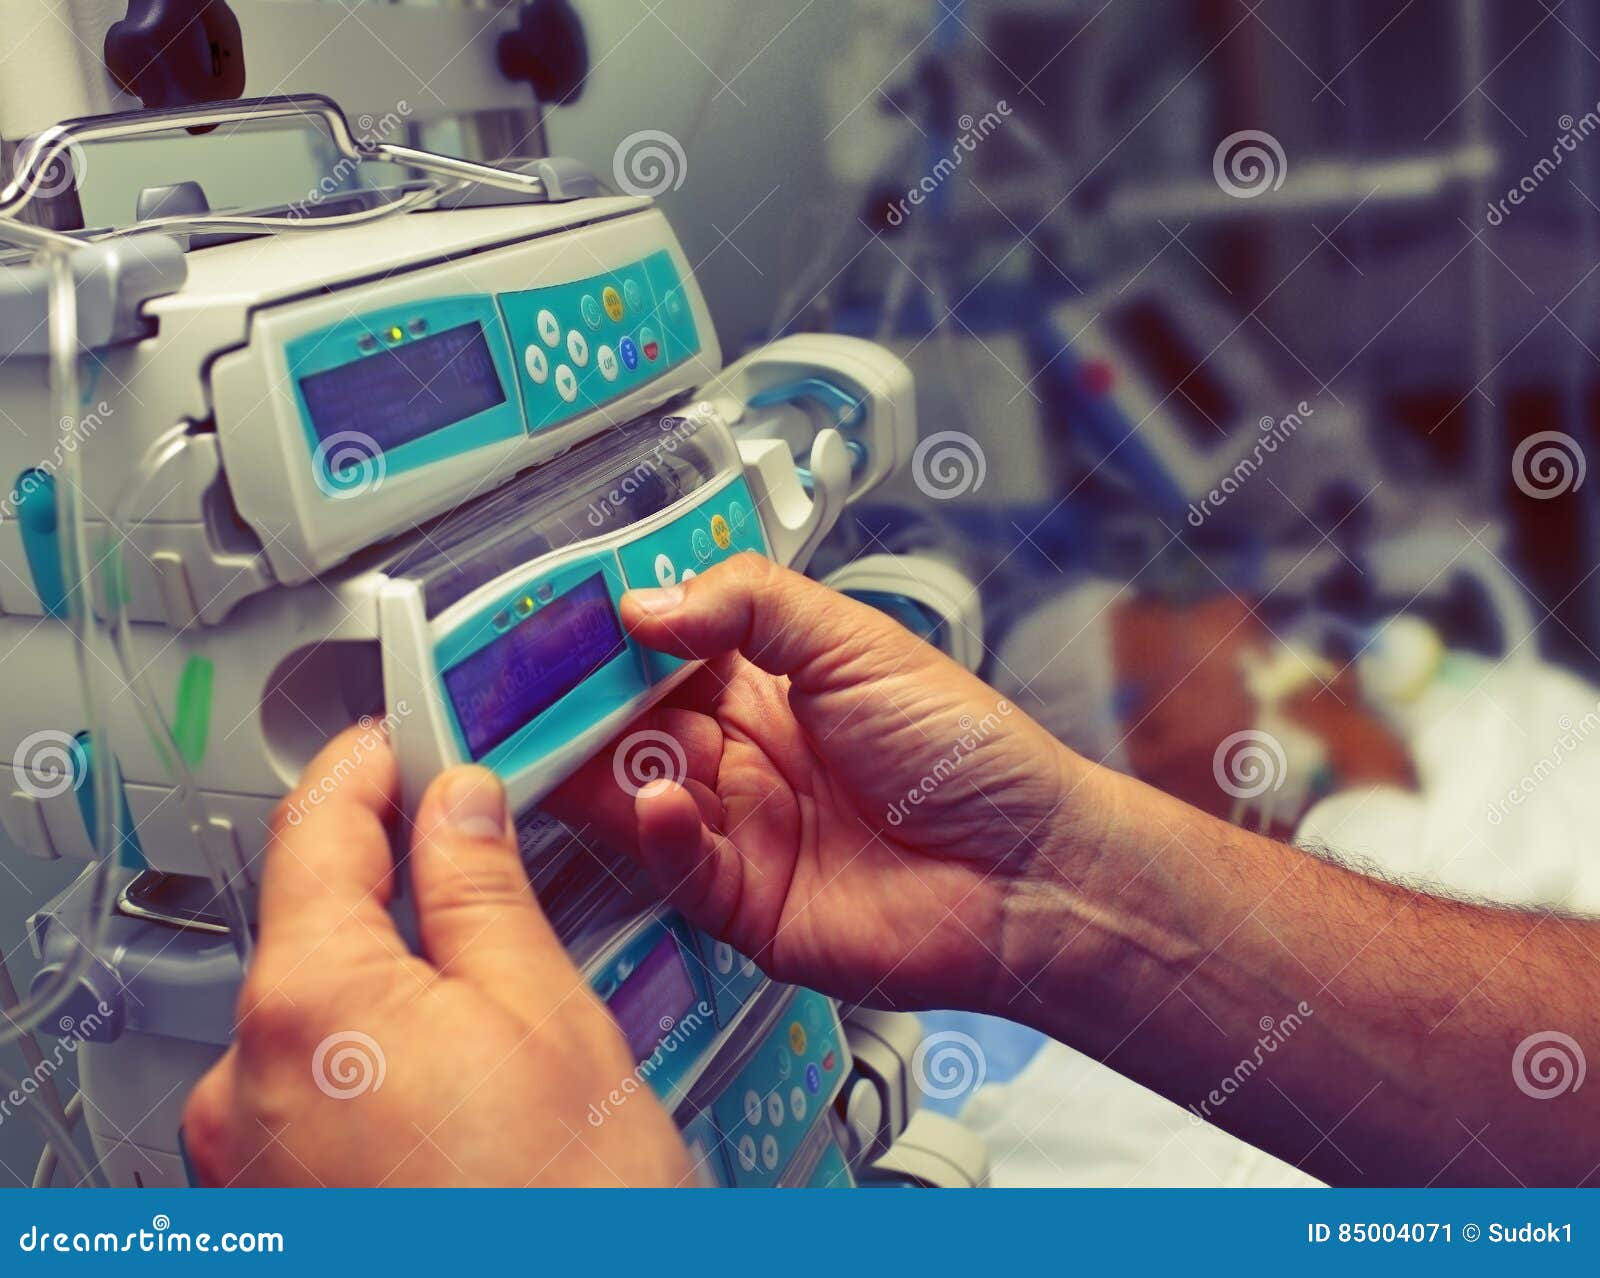 medical worker configures equipment in icu